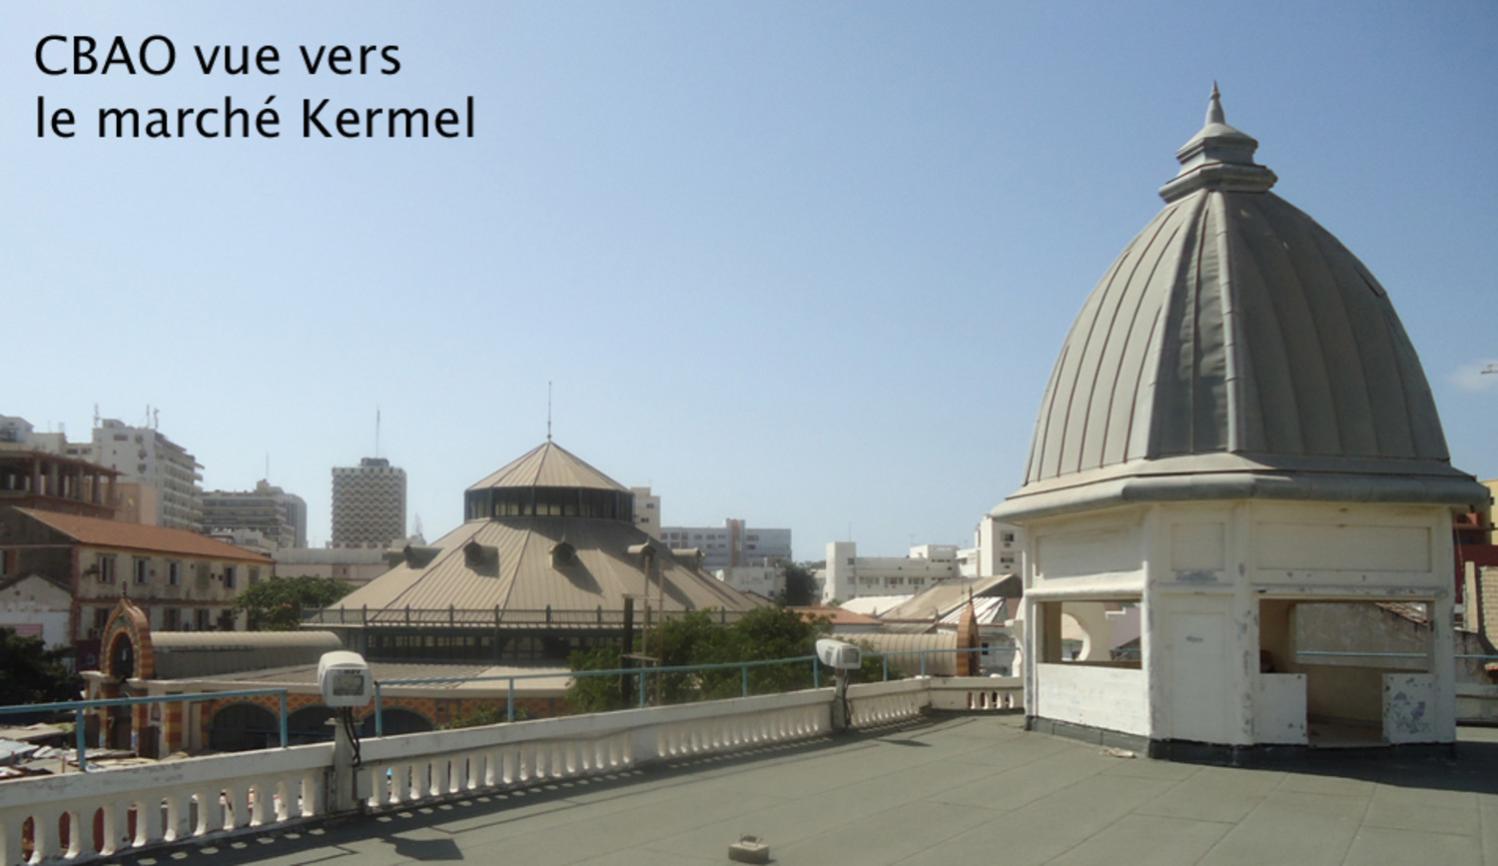 View to Kermel market